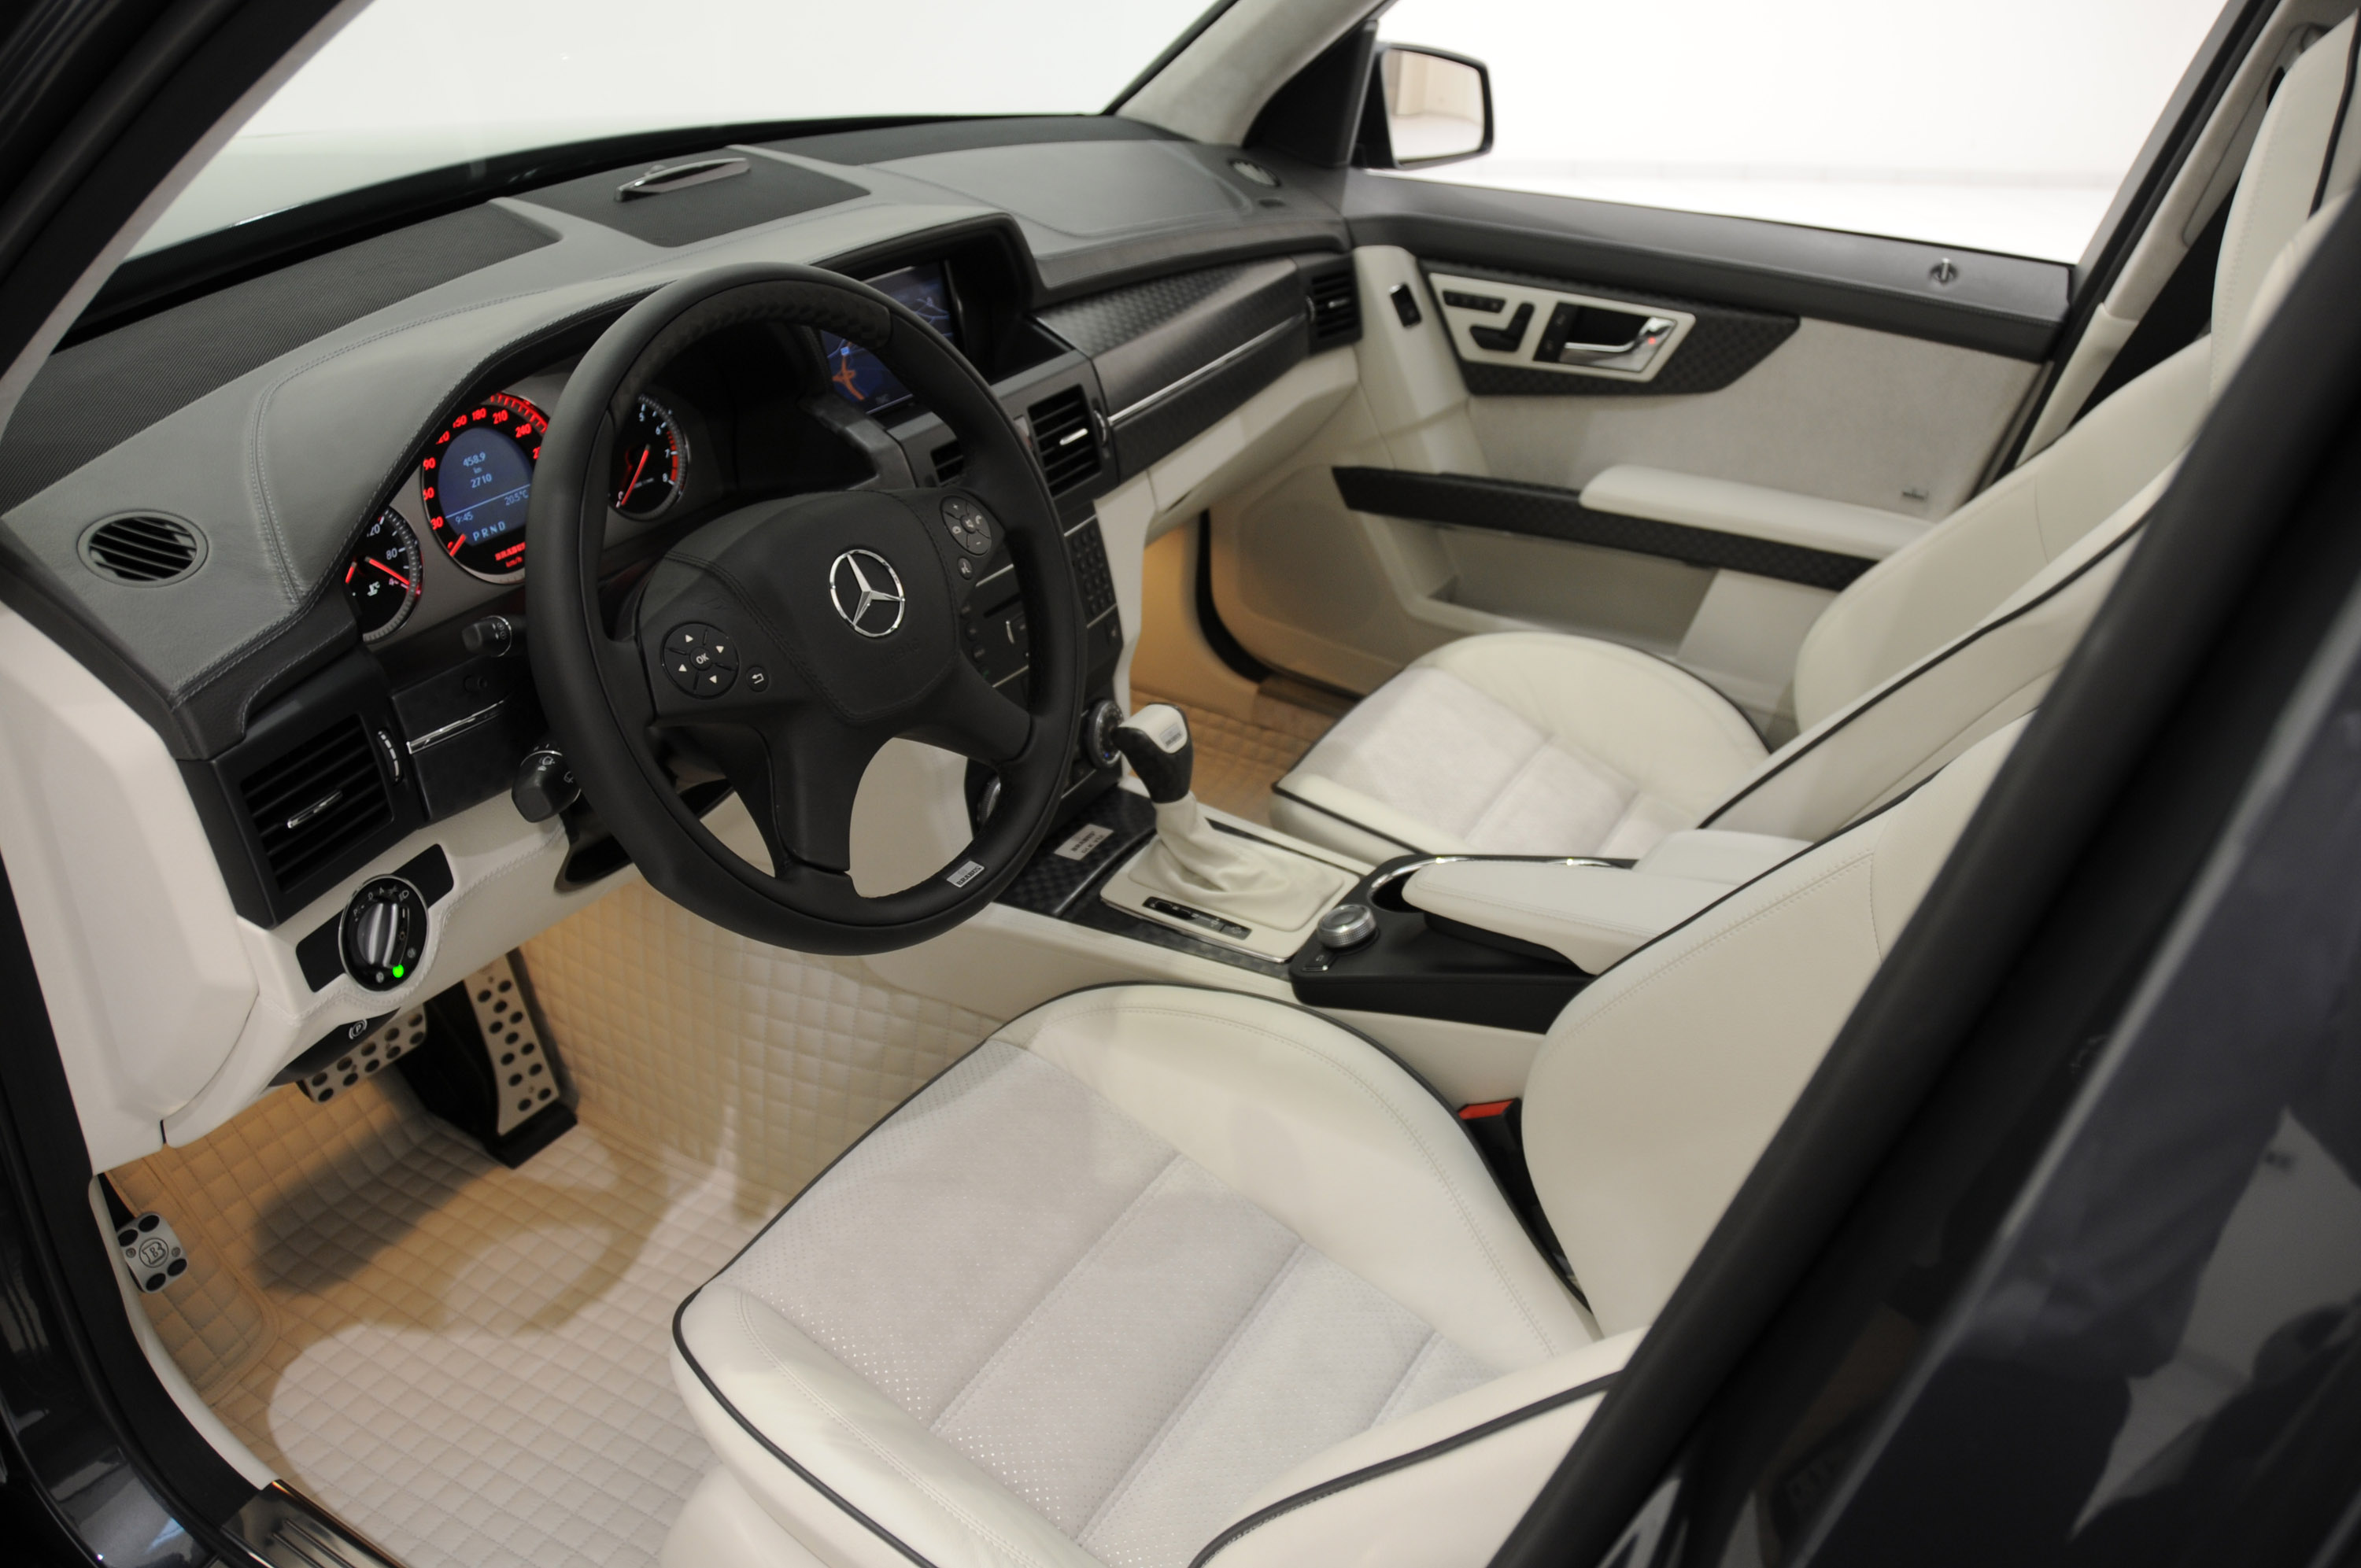 Brabus Mercedes-Benz GLK V12